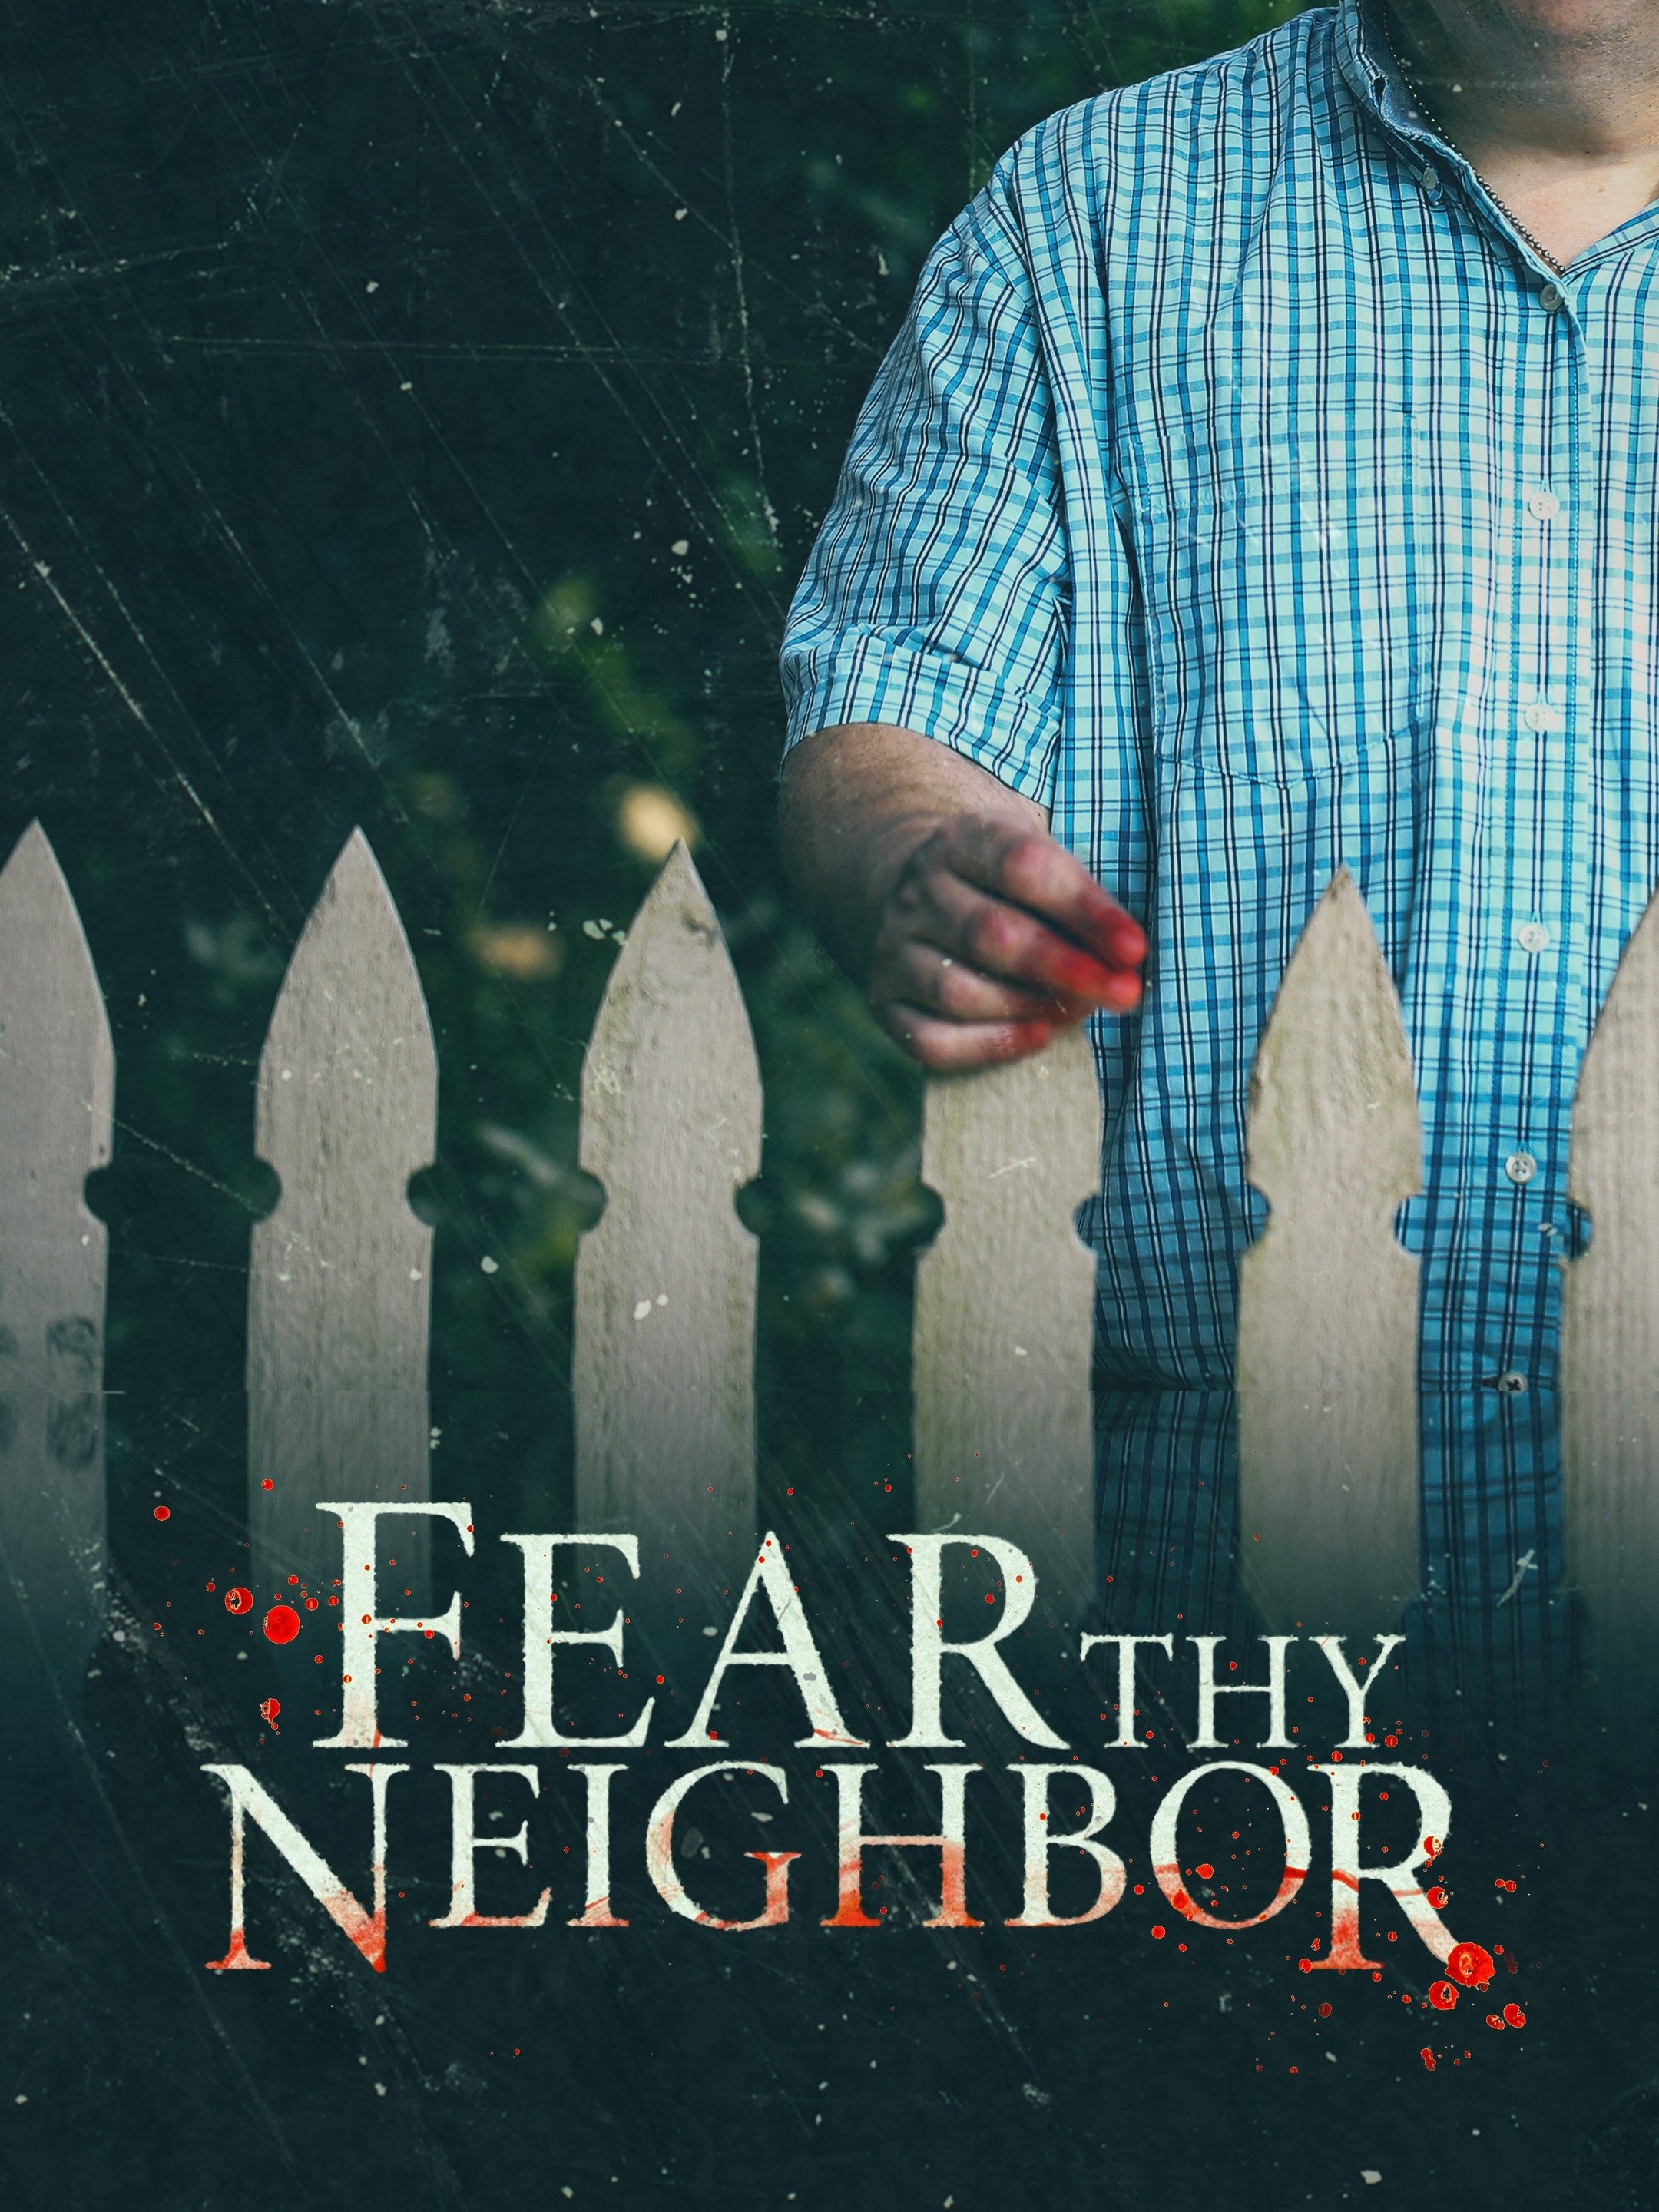 The Neighbors - Full Cast & Crew - TV Guide